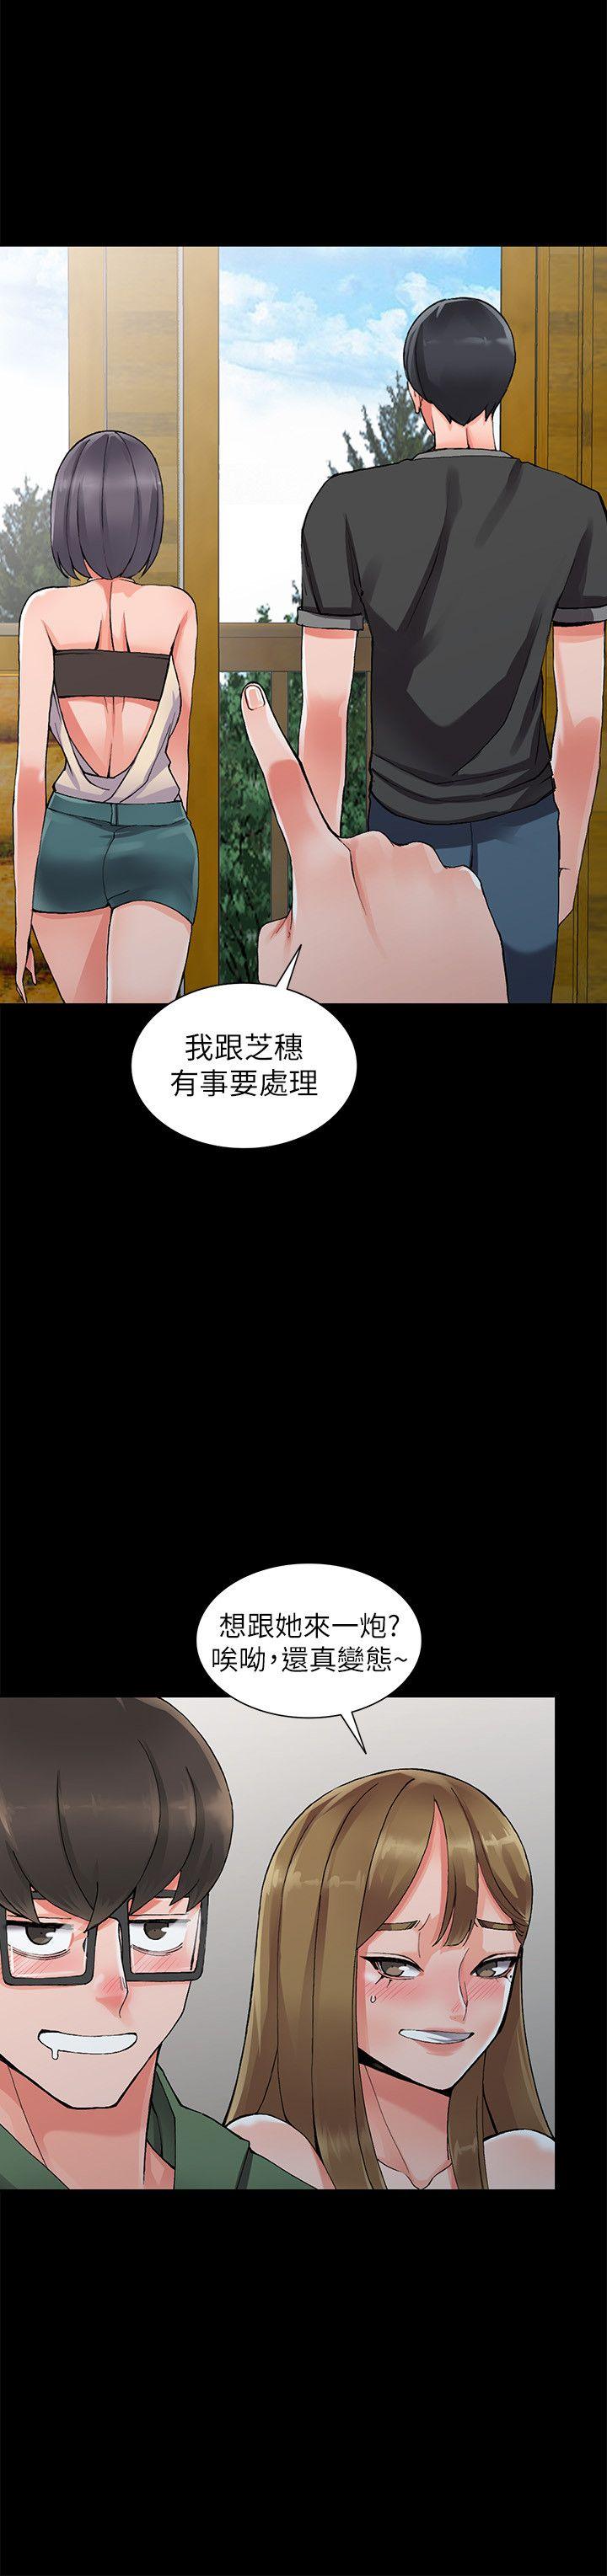 《异乡人:意外桃花源》漫画 第9话-停不下的欢愉